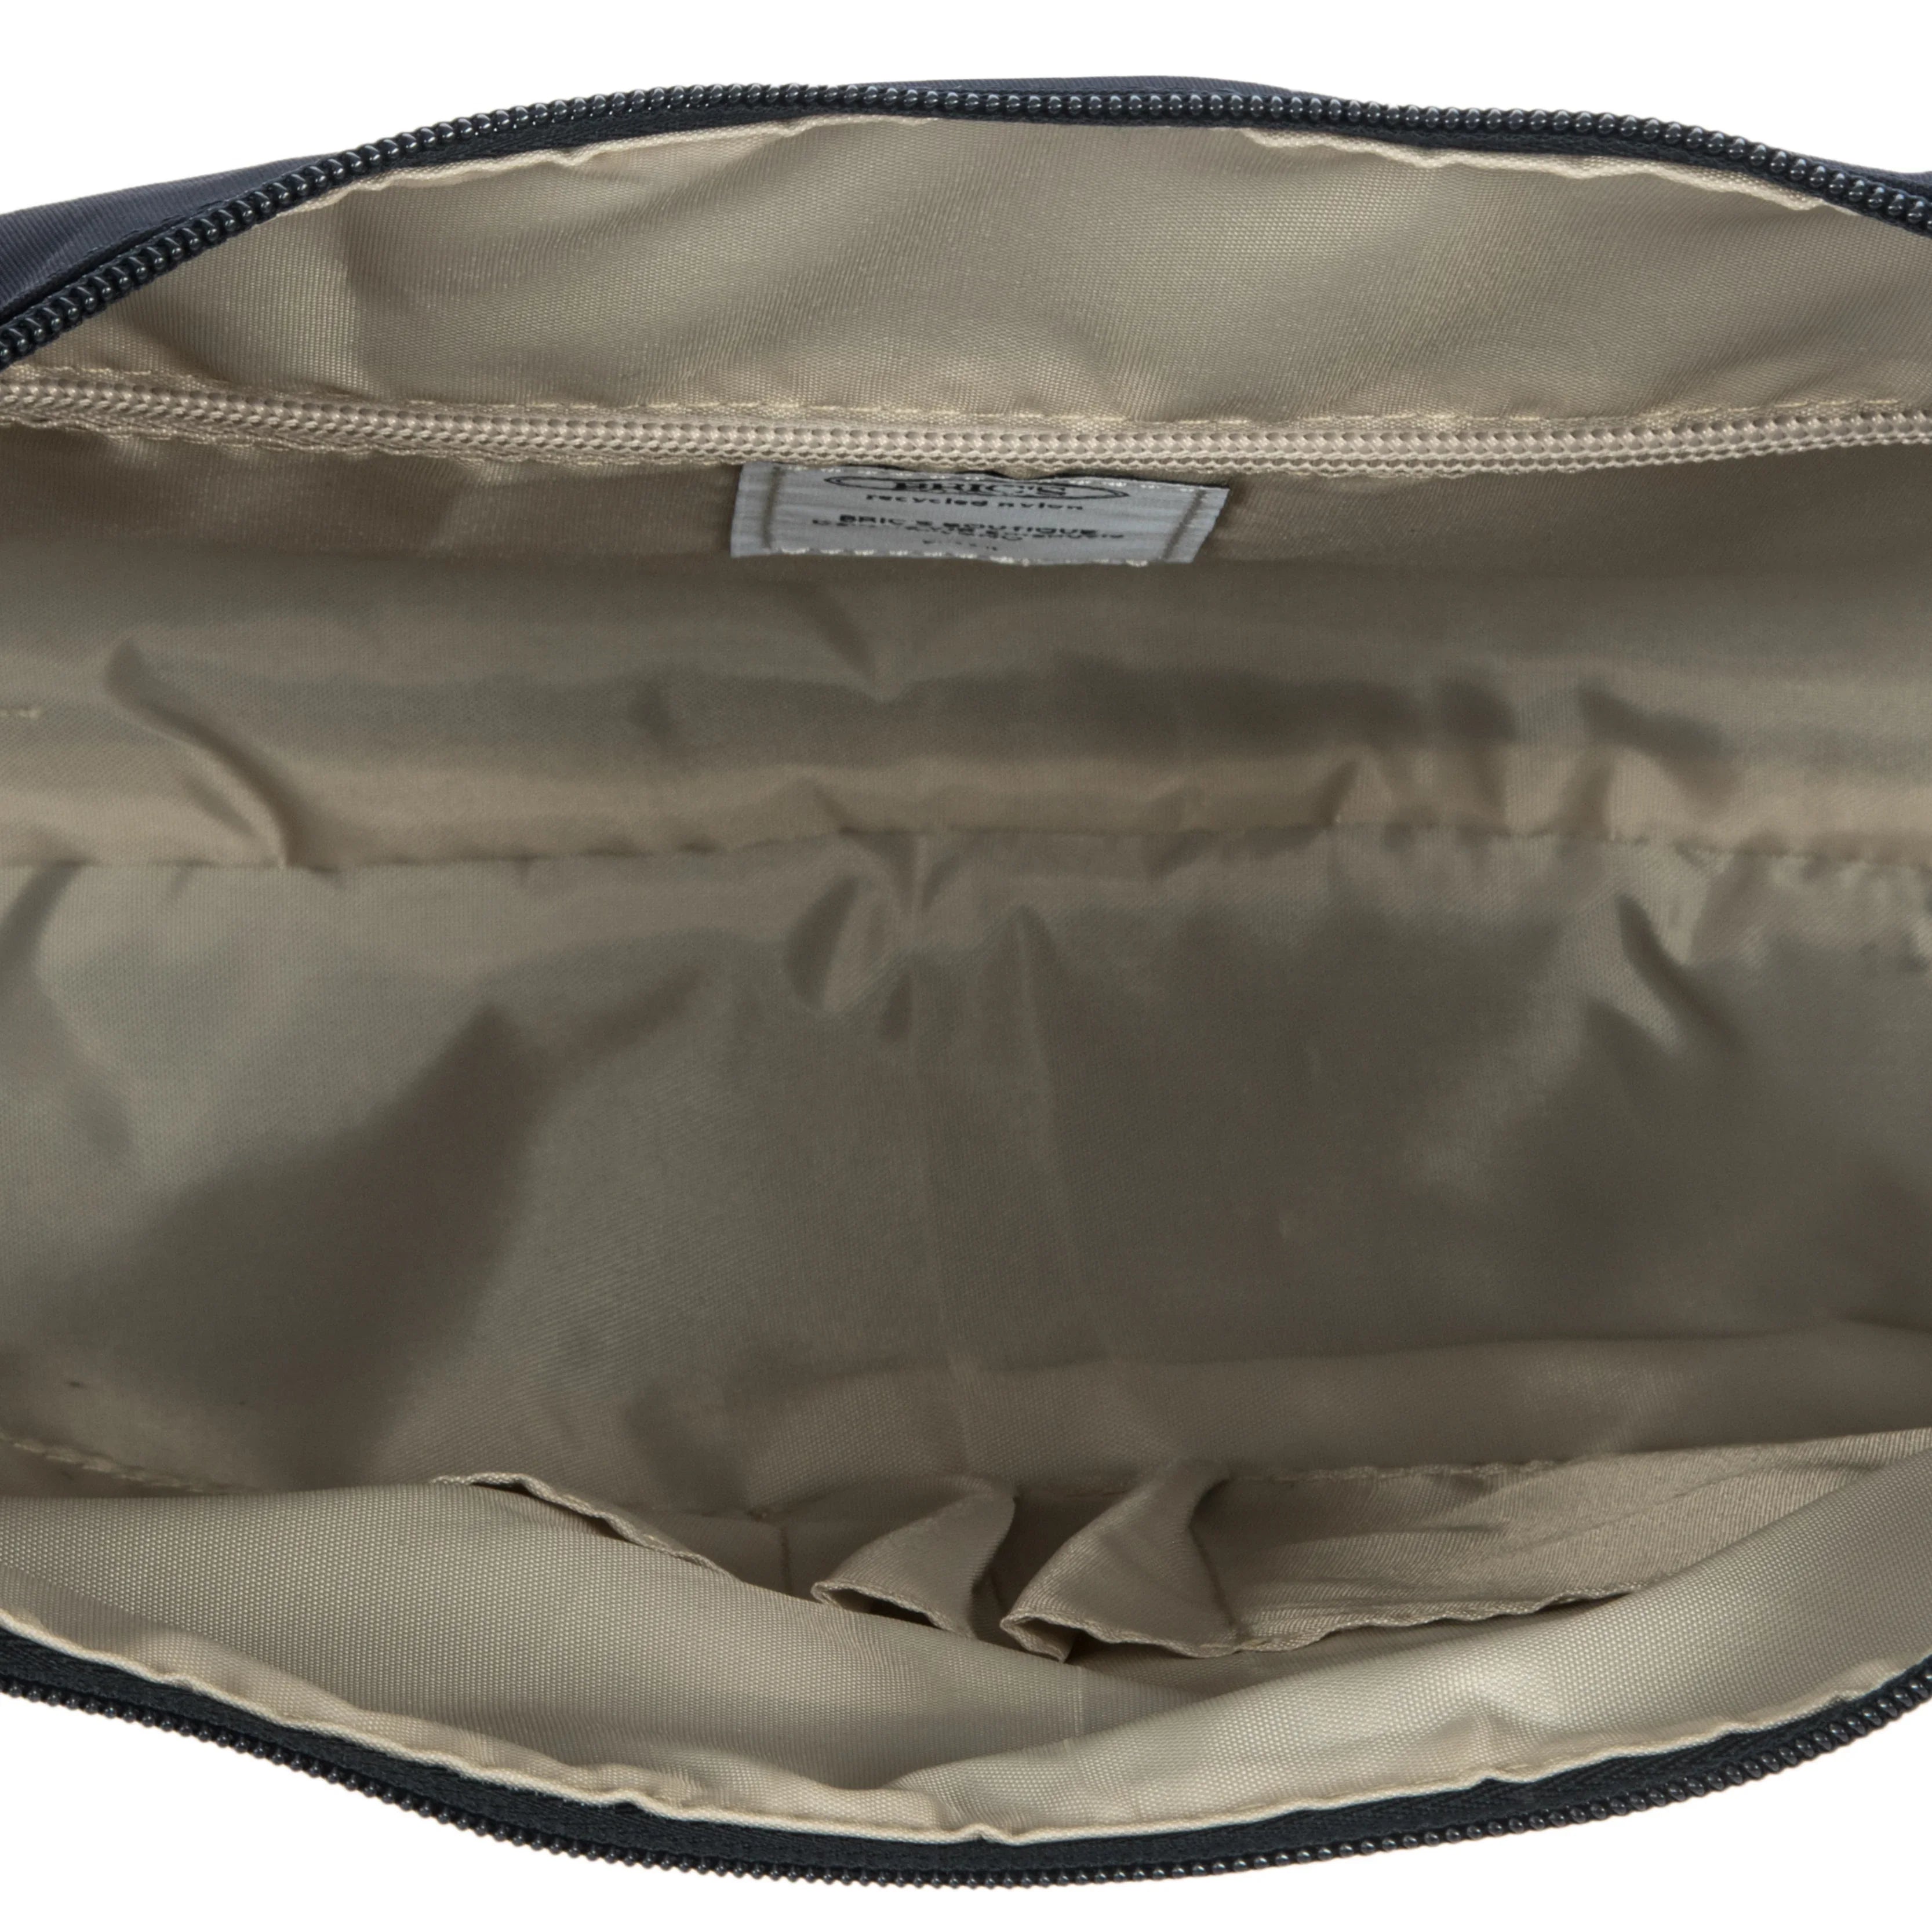 Brics X-Bag shoulder bag 38 cm - Black